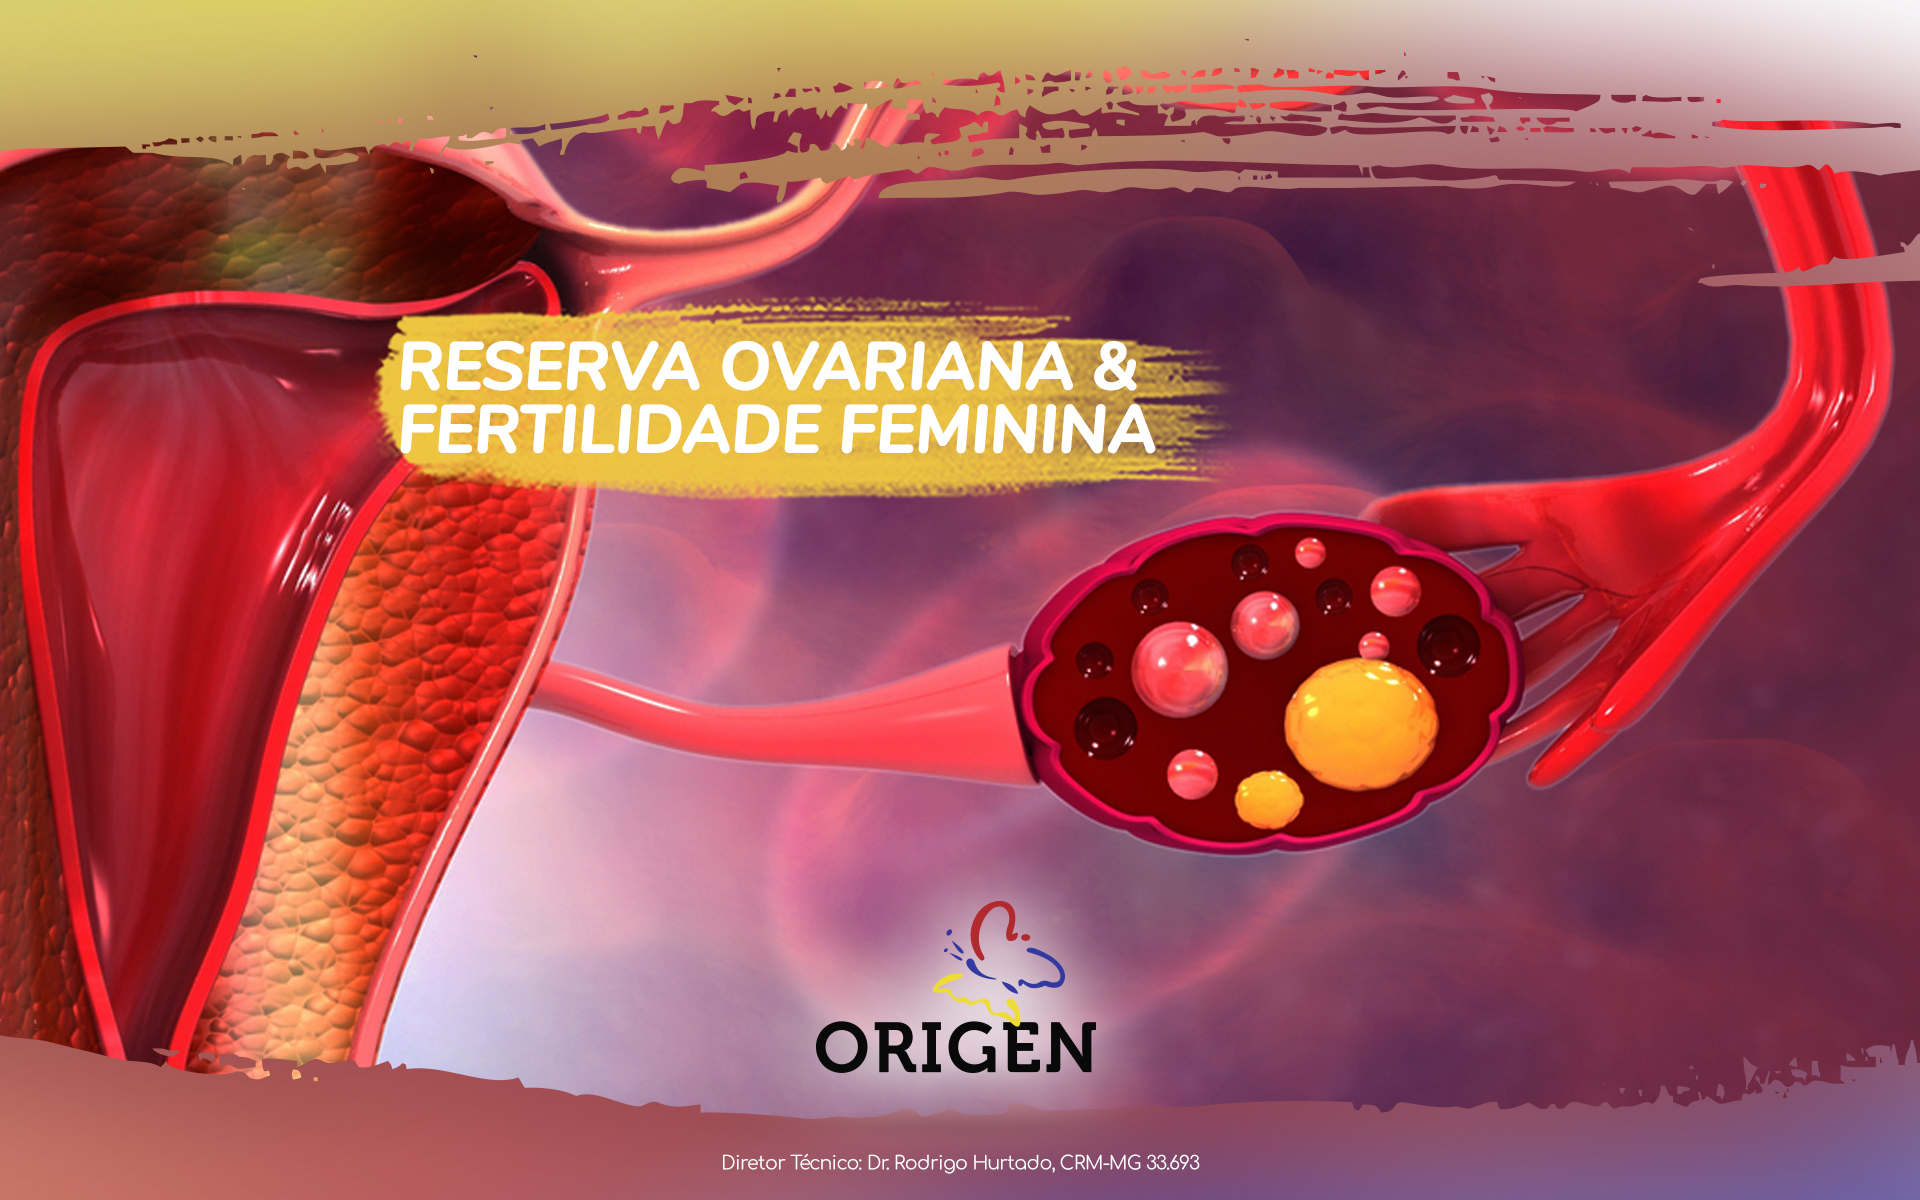 Reserva ovariana e fertilidade feminina